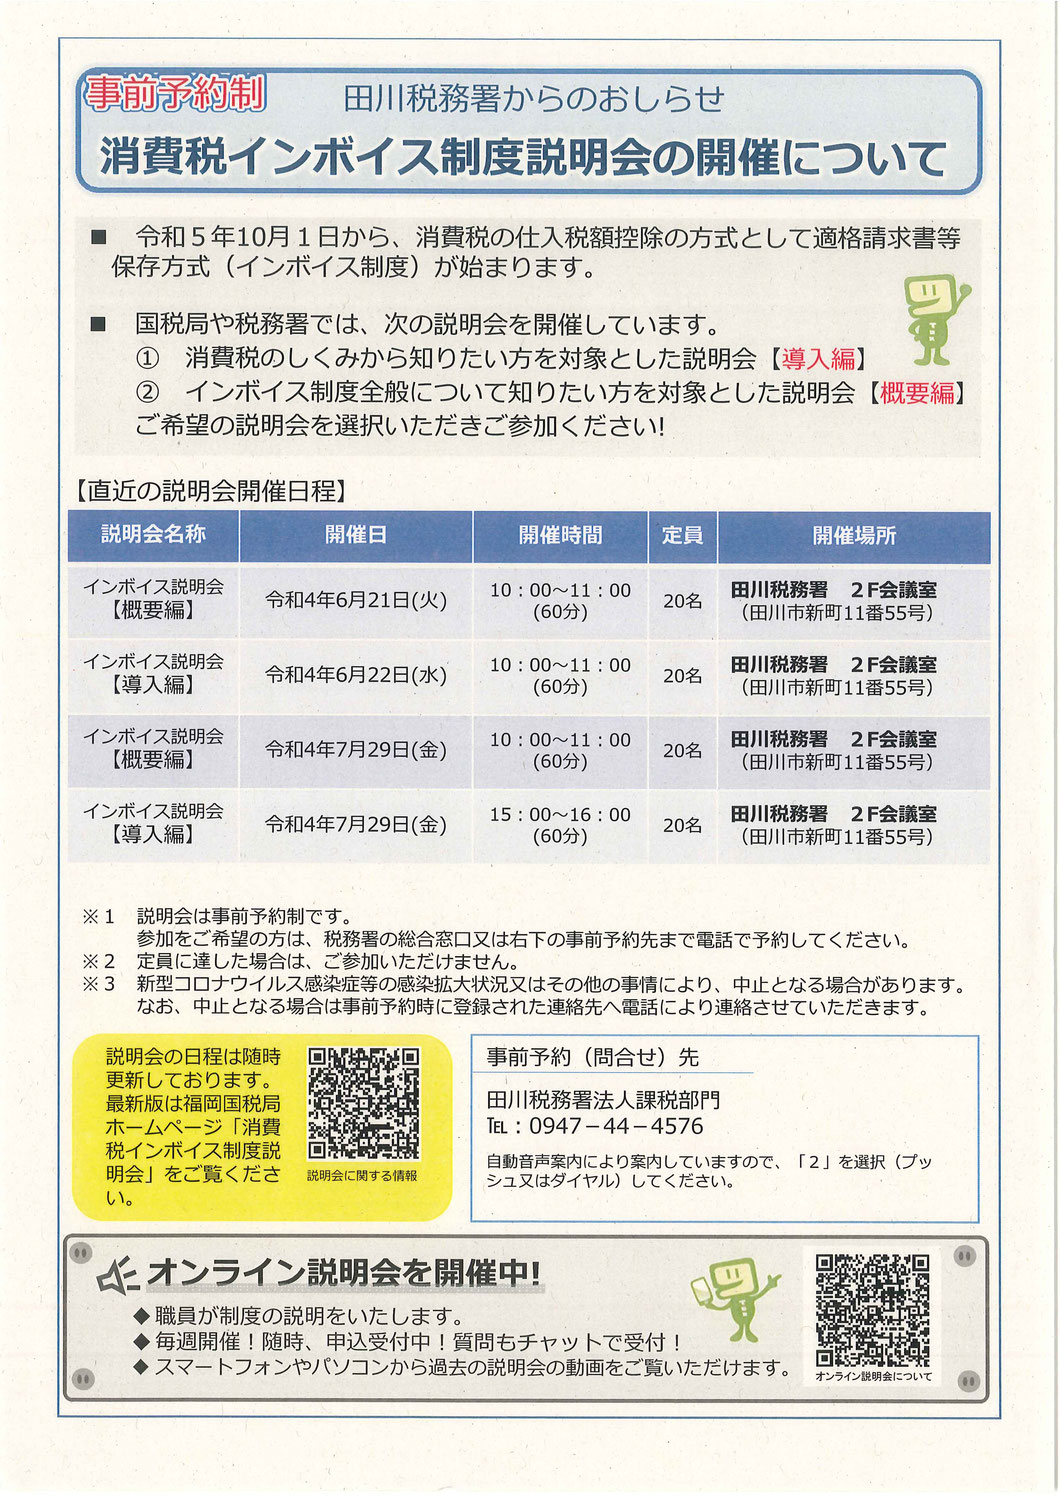 【田川税務署より】消費税インボイス制度説明会の開催について